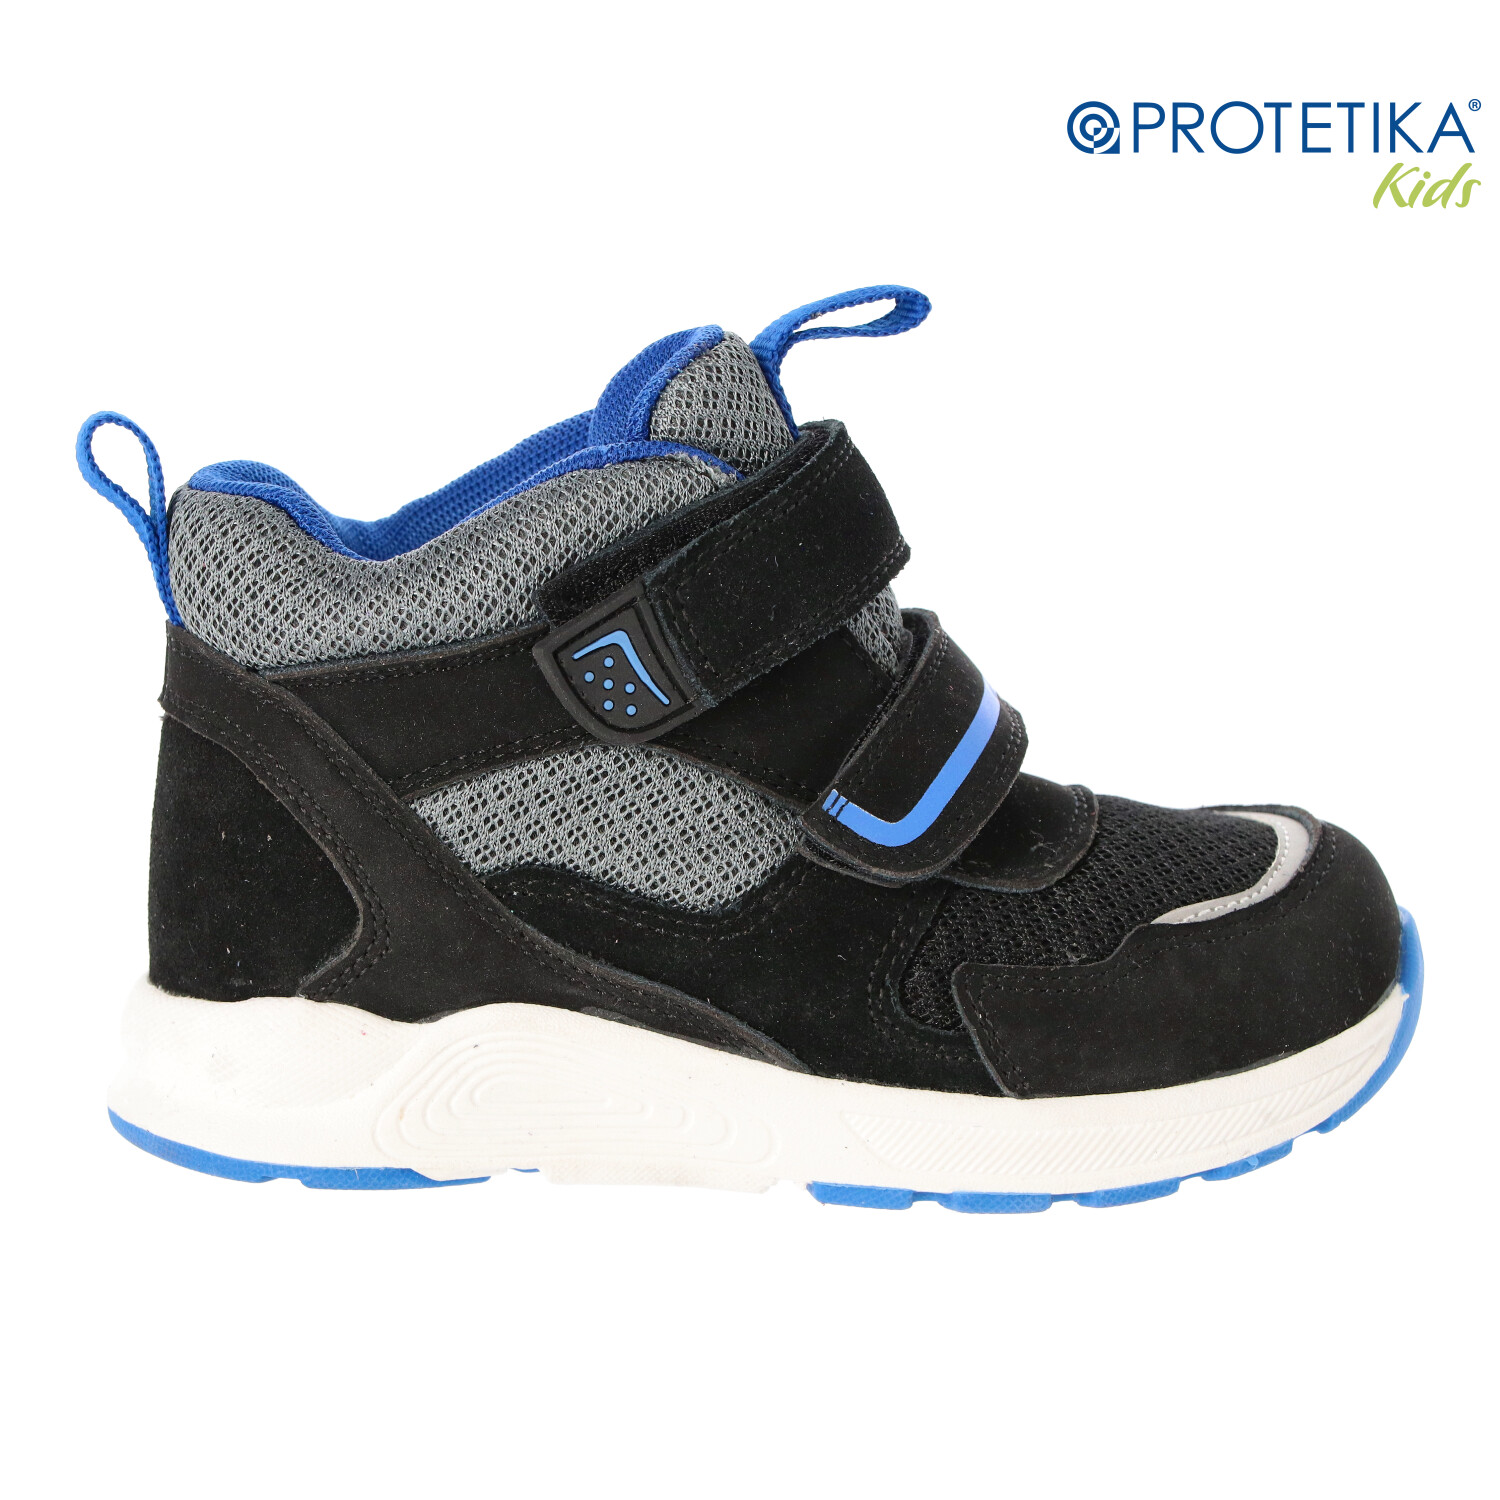 Protetika -  topánky s membránou PRO-tex GIZMO black